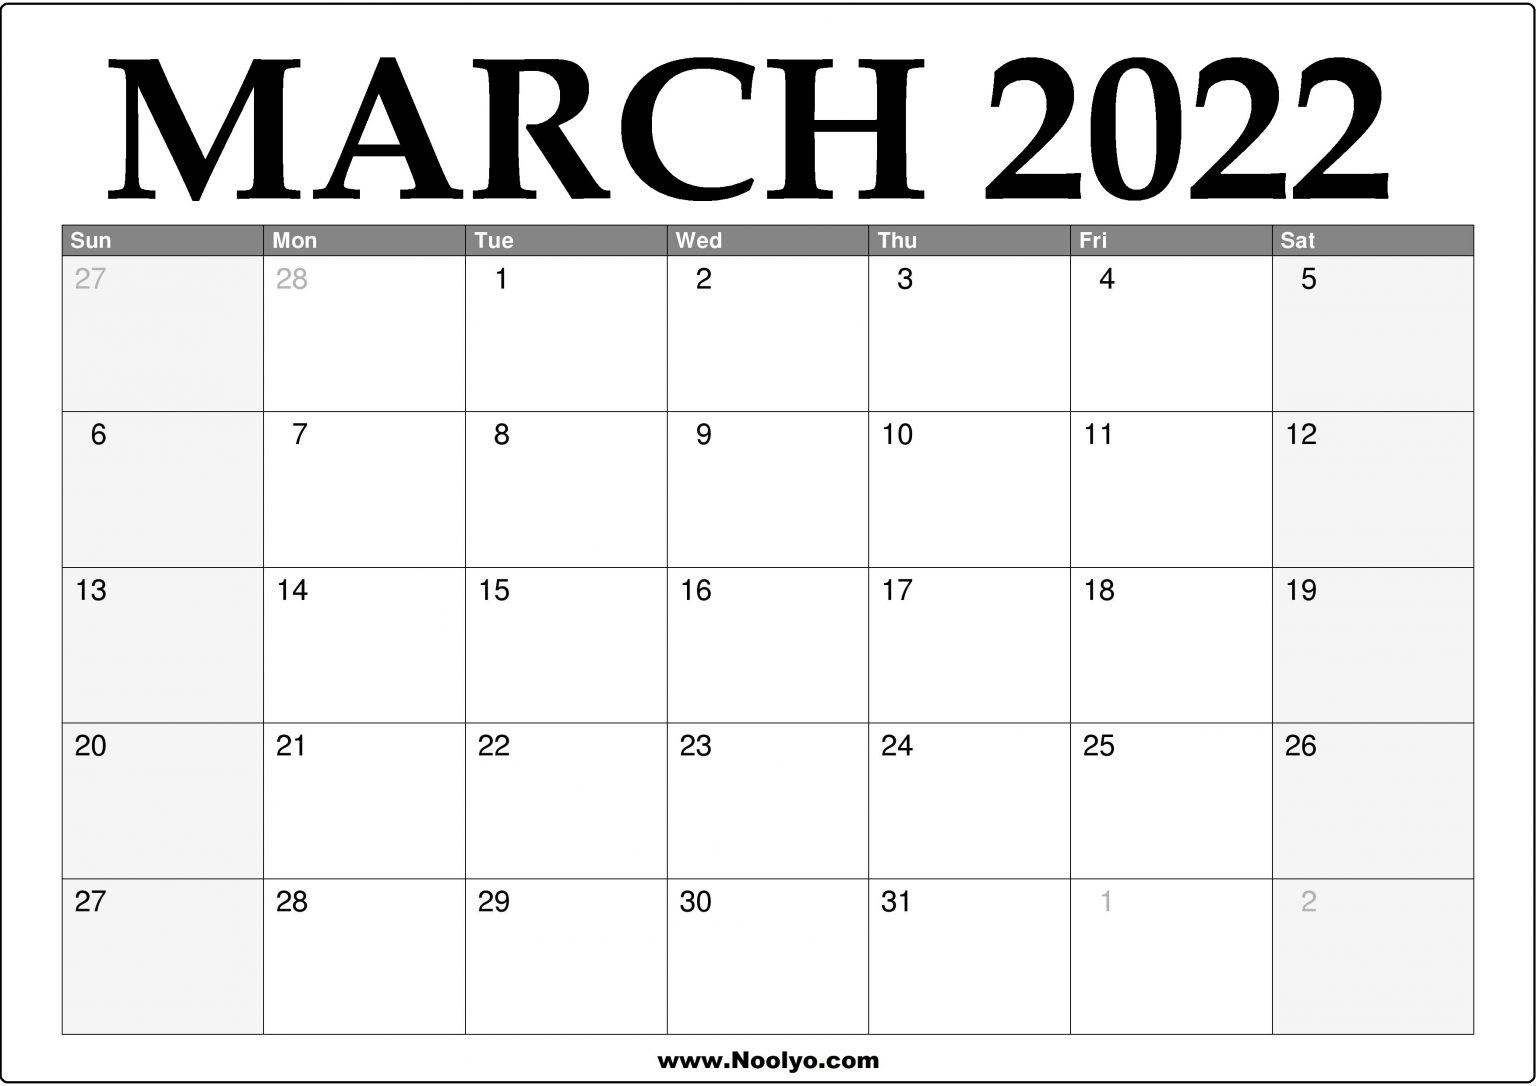 Catch March 2022 Calendar Template